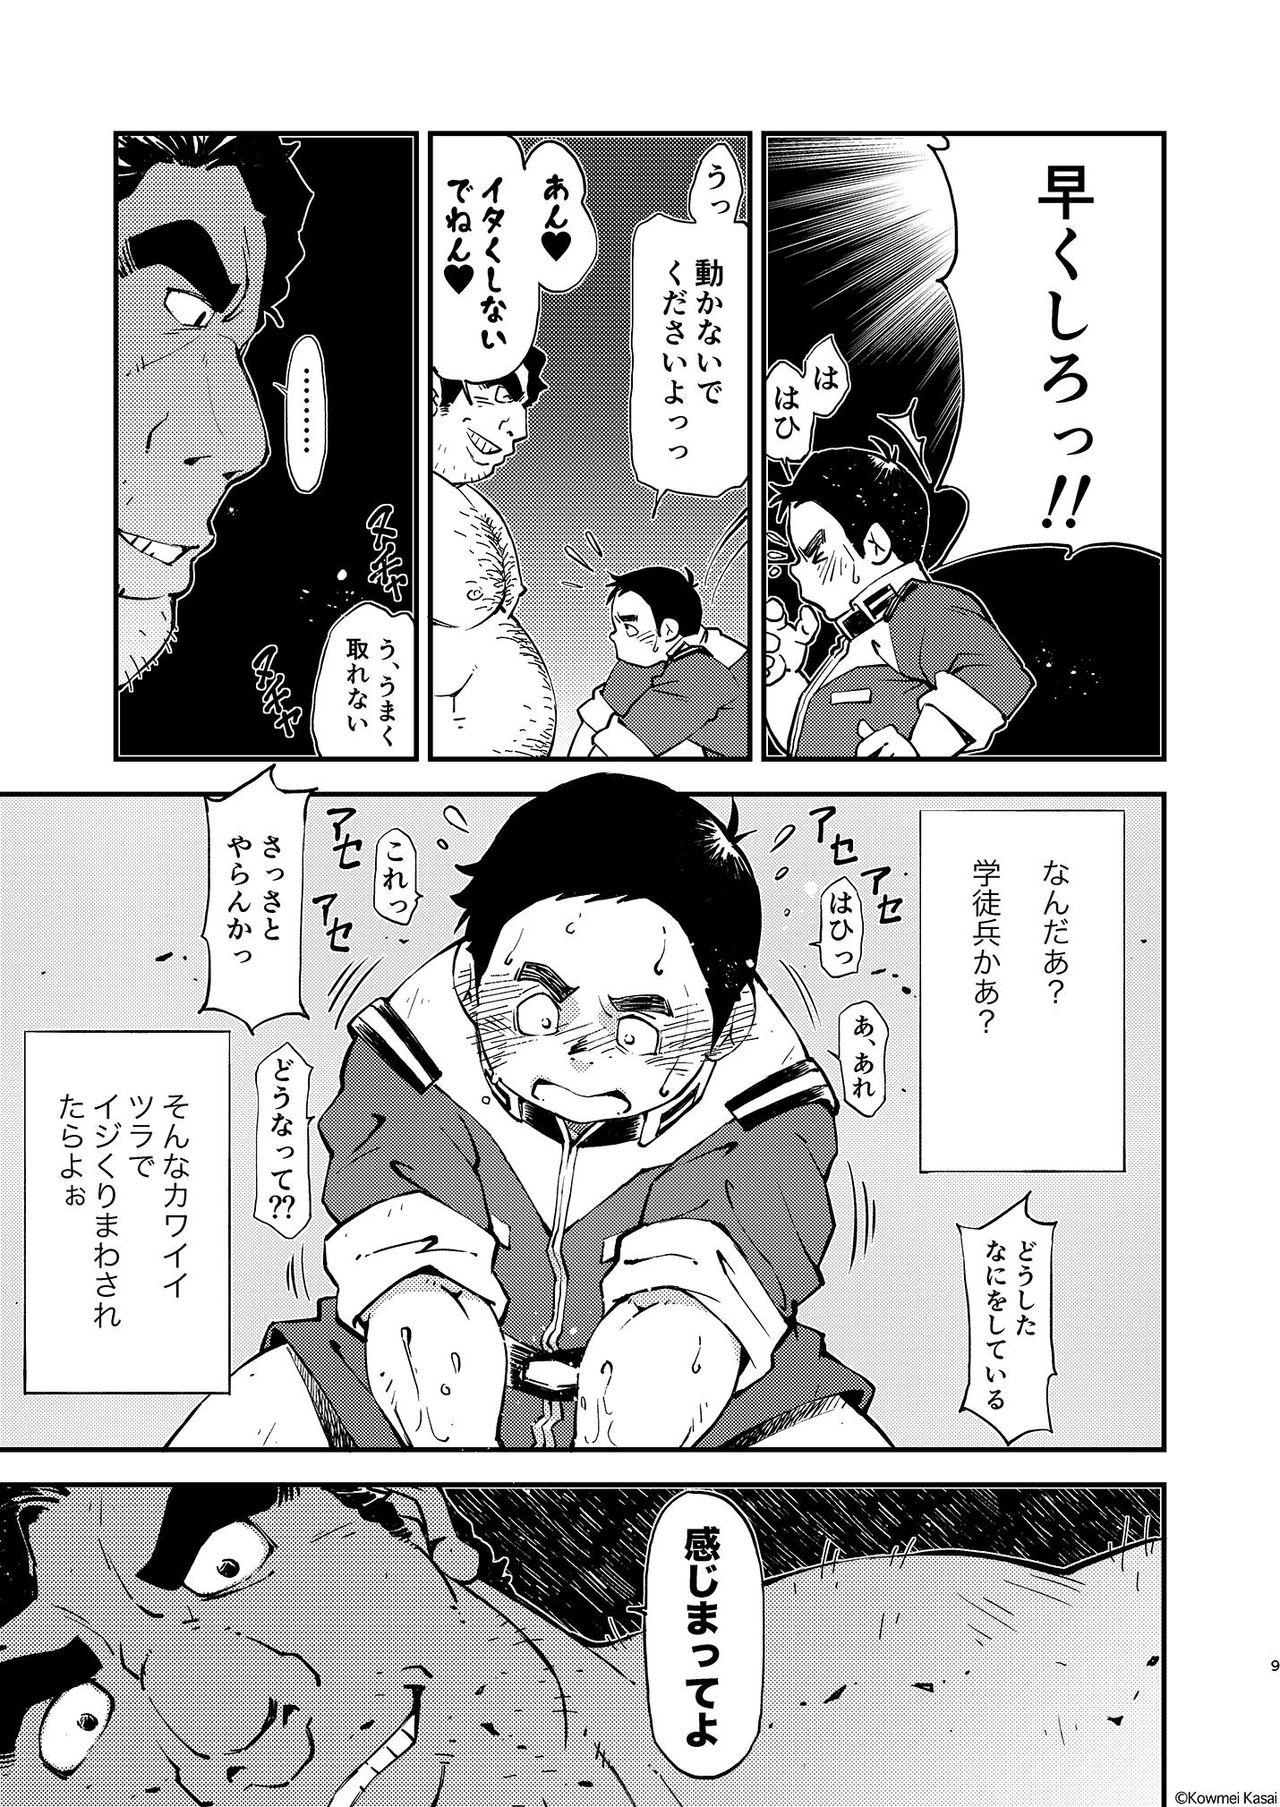 Rebolando Kidou Sensha wa Fukuzashiki 2 THE ORIGIN - Mobile suit gundam Bathroom - Page 10